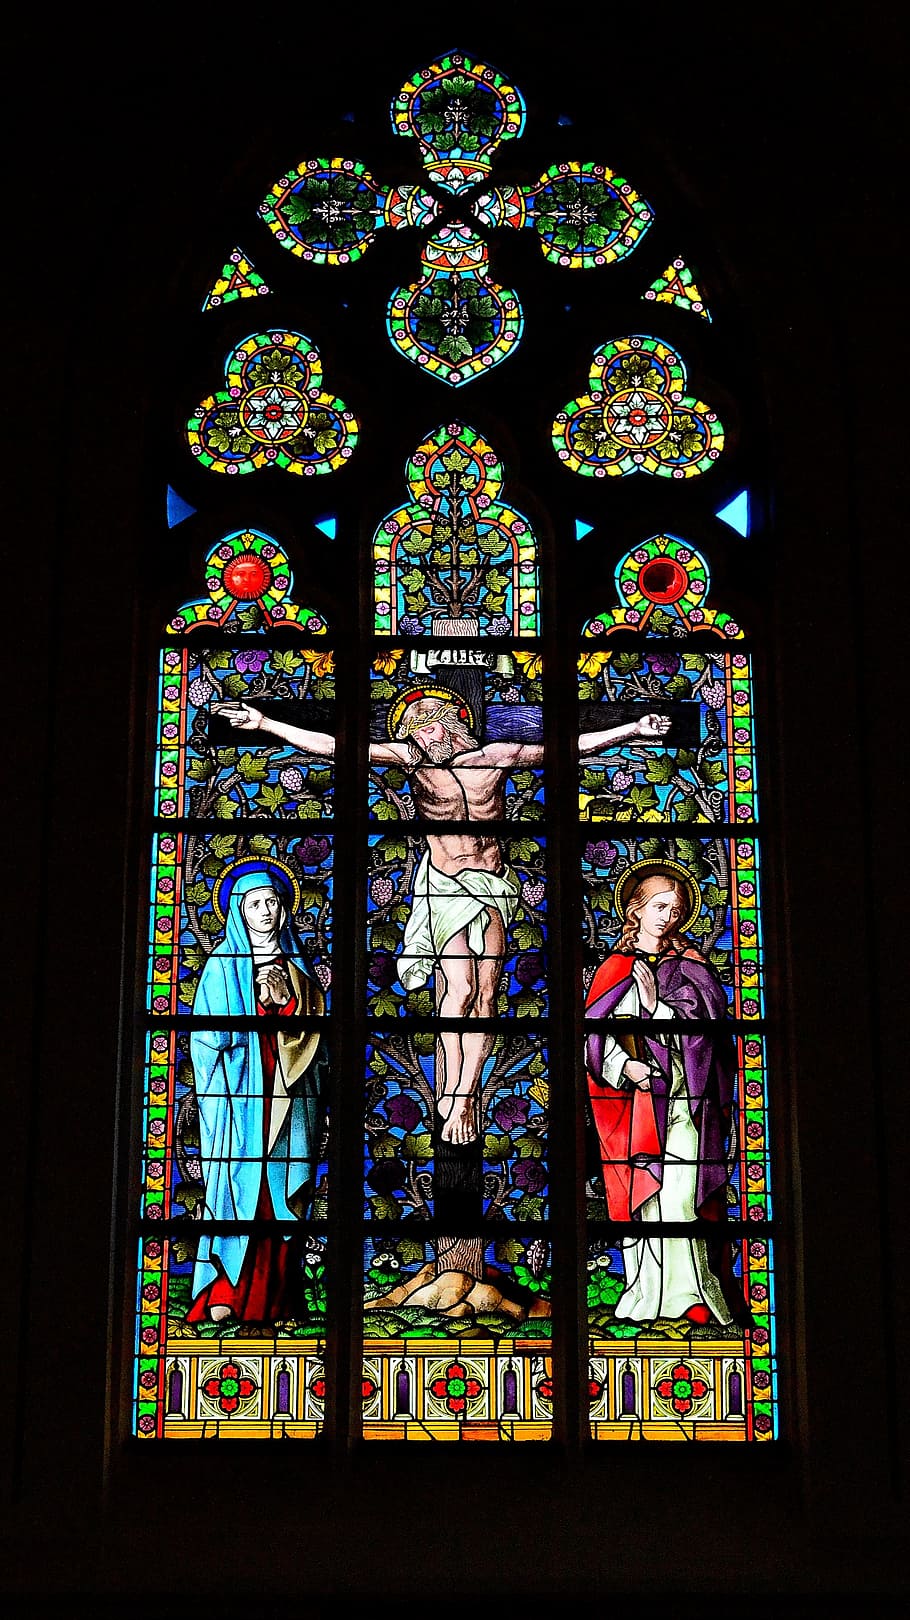 jendela gereja, penyaliban, jendela kaca patri, iman, gereja, kristen, inri, yesus, alkitab, representasi manusia